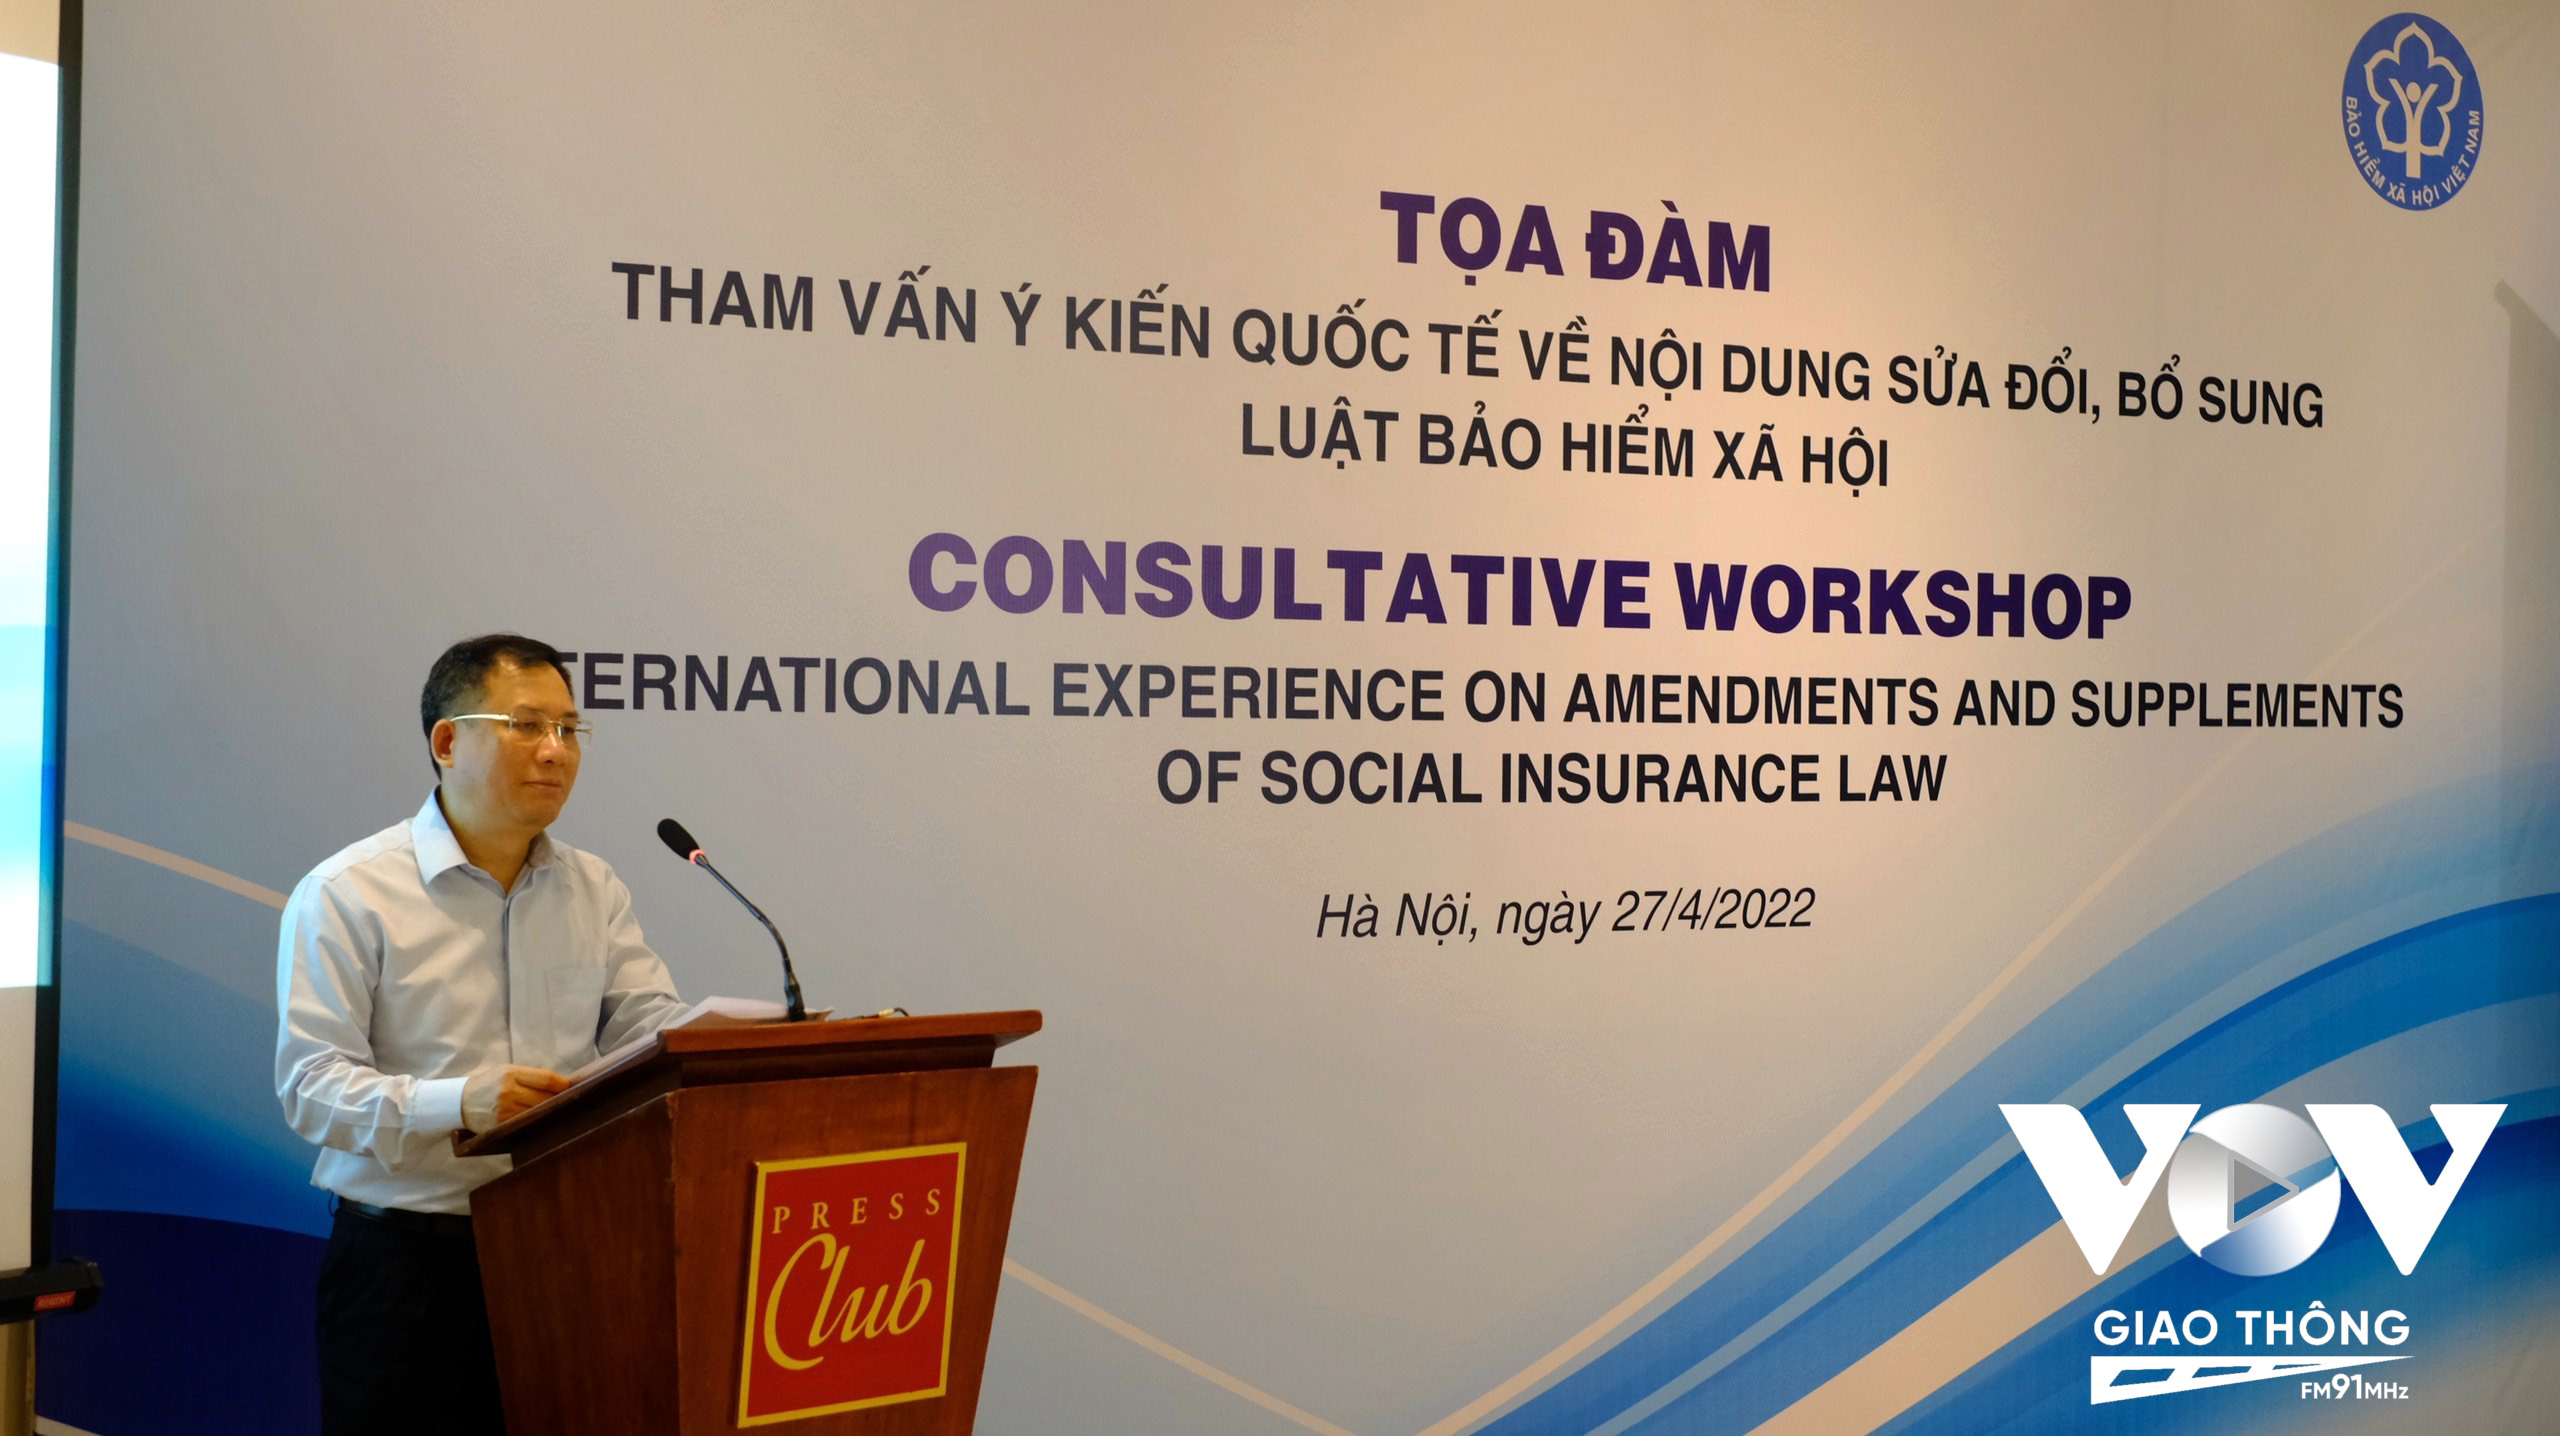 Phó Tổng Giám đốc BHXH Việt Nam Lê Hùng Sơn cho biết, một số nội dung cần được làm rõ và điều chỉnh trong dự thảo sửa đổi Luật BHXH (sửa đổi) lần này.